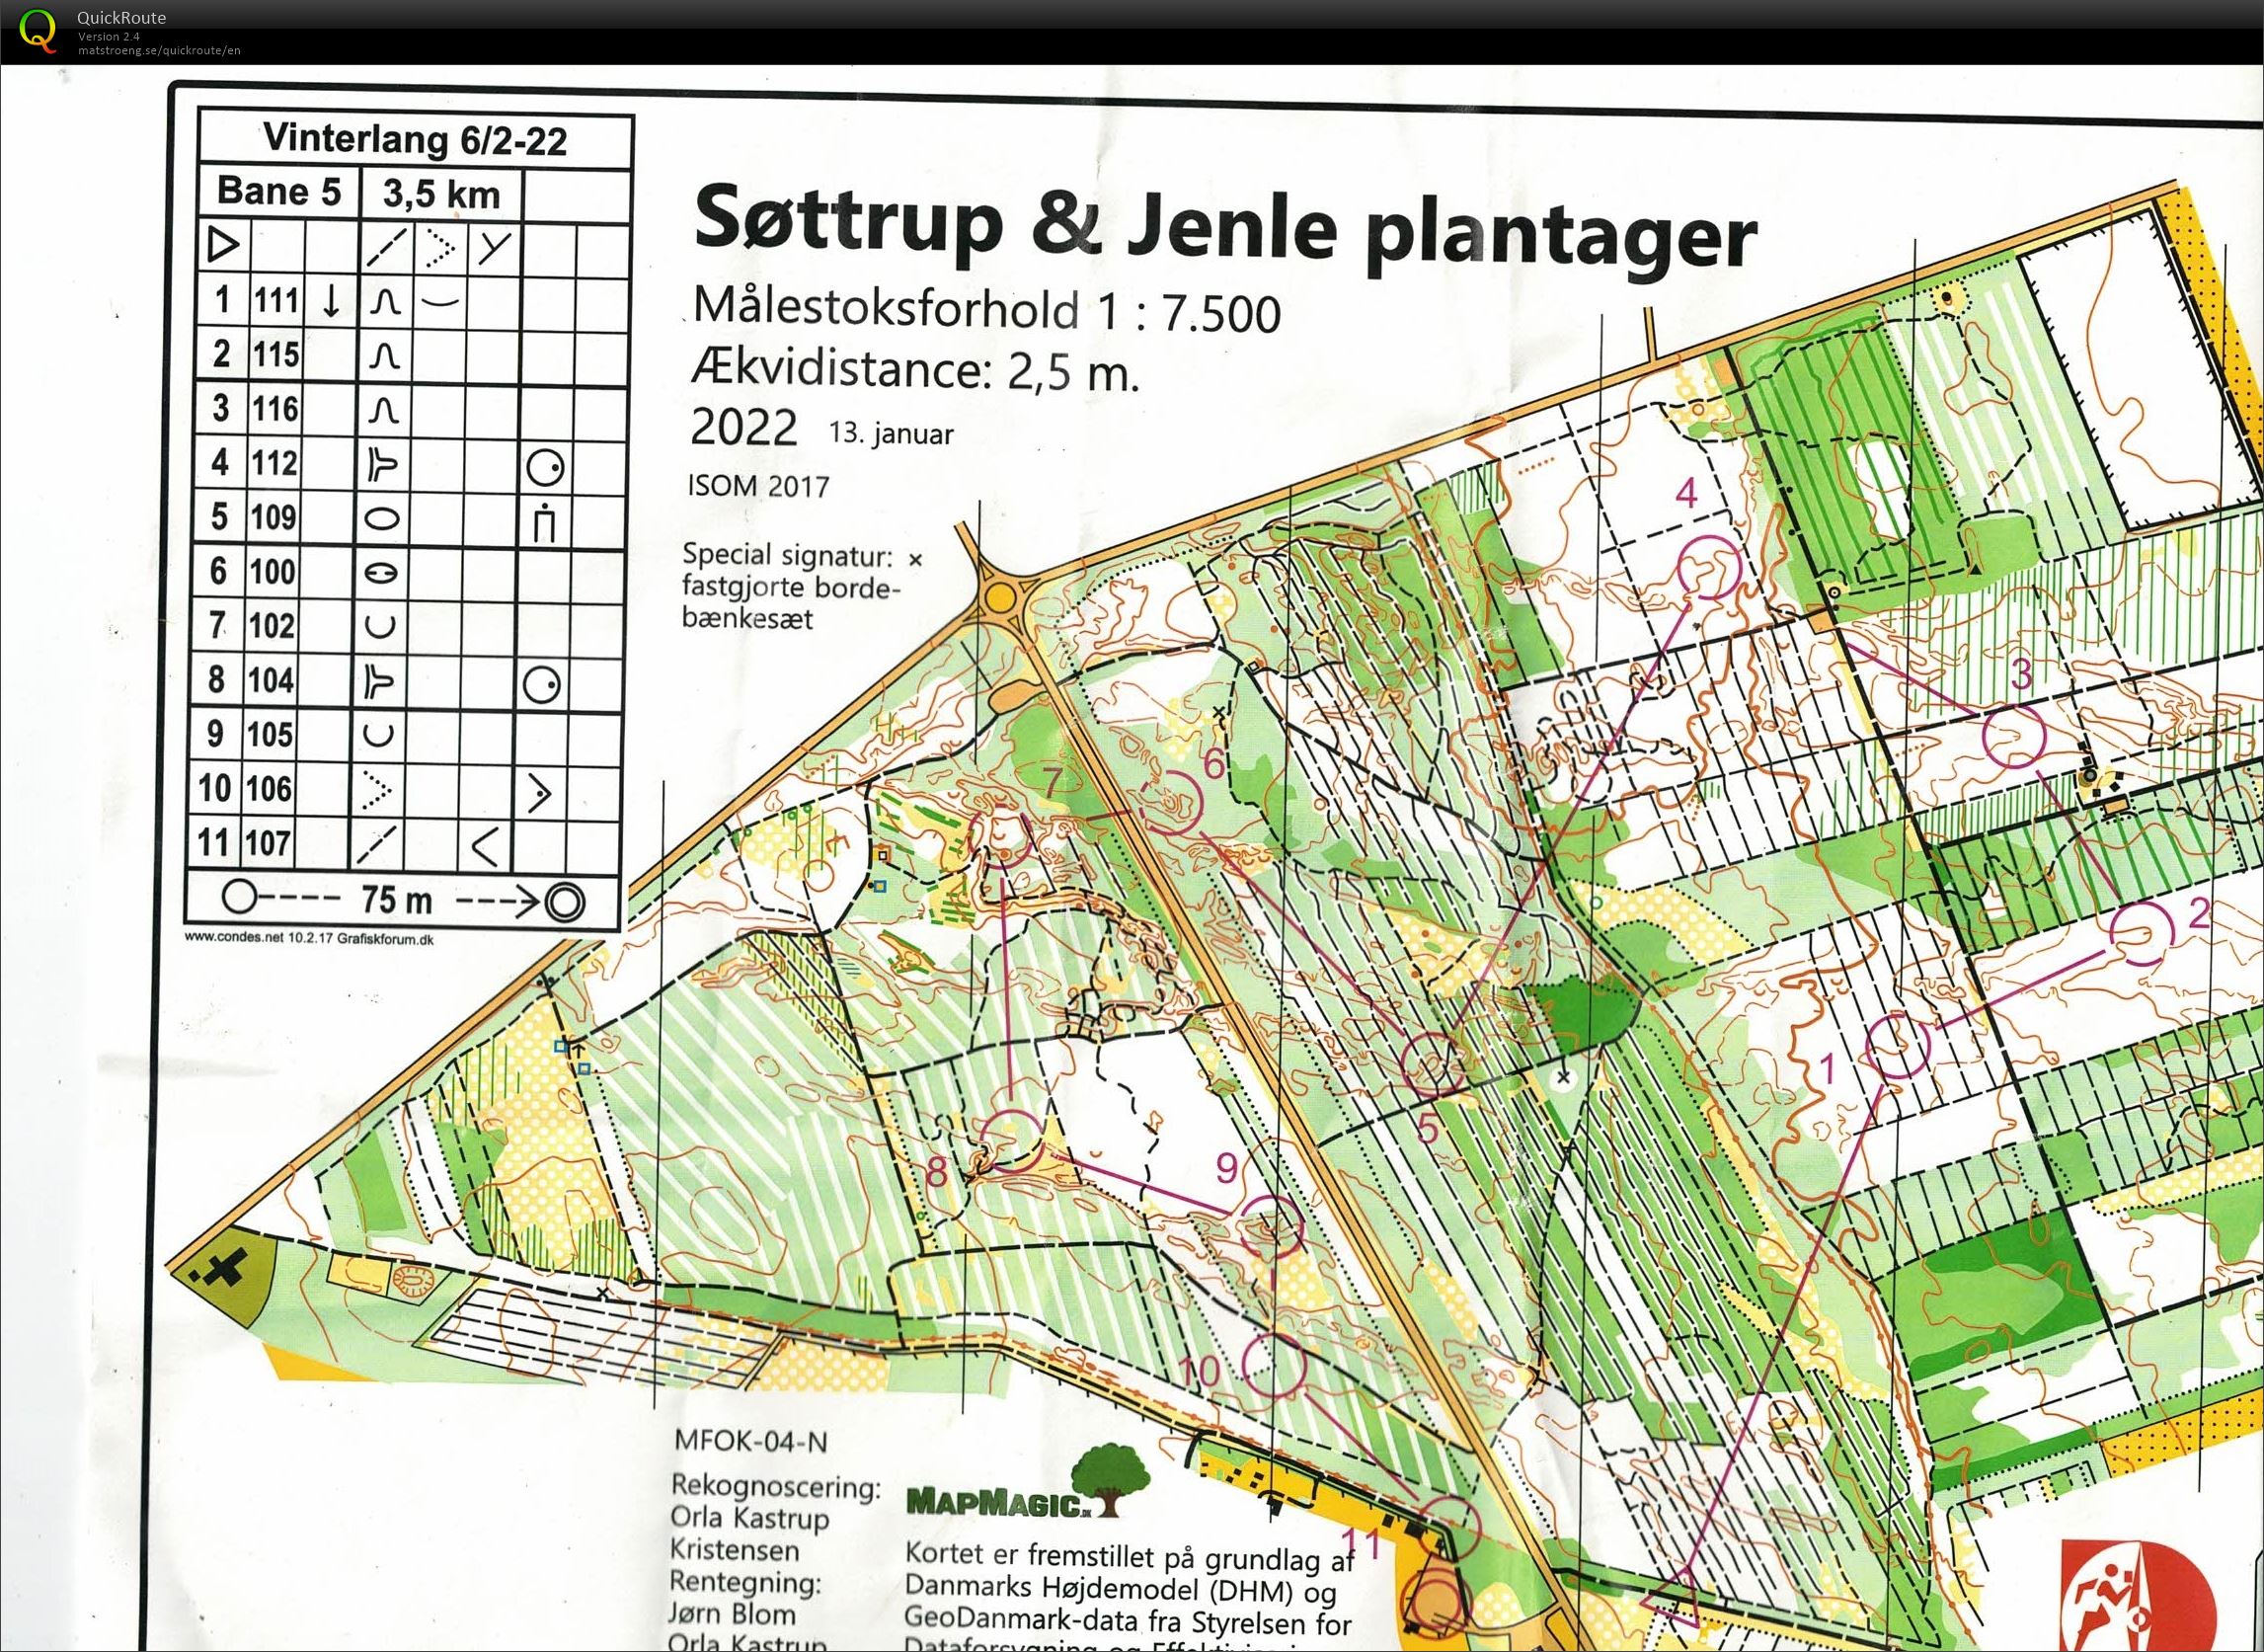 Søttrup Jenle Plantager, Vinterlang, Bane 5, Pia Gade, 060222 (06.02.2022)